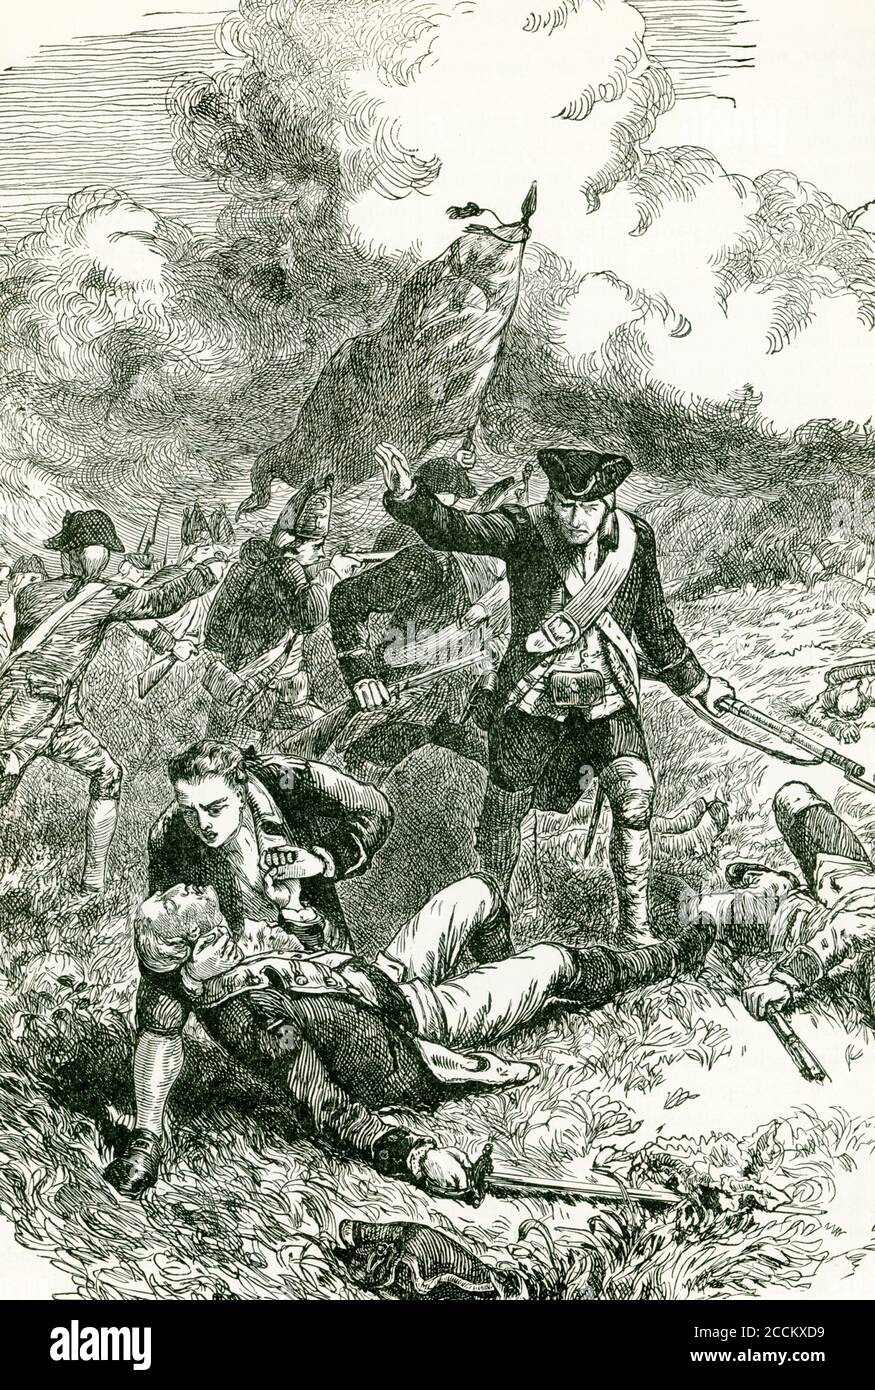 Der britische Major Pitcairn marschierte zusammen mit Oberstleutnant Smith 800 Stammgäste nach Lexington und dann nach Concord. Pitcairn wurde in Aktion während der Schlacht von Bunker Hill getötet. Er gilt als einer der angesehensten britischen Offiziere sowohl von seinen Männern als auch von den Kolonisten, wurde in der Old North Church in Boston begraben. Stockfoto